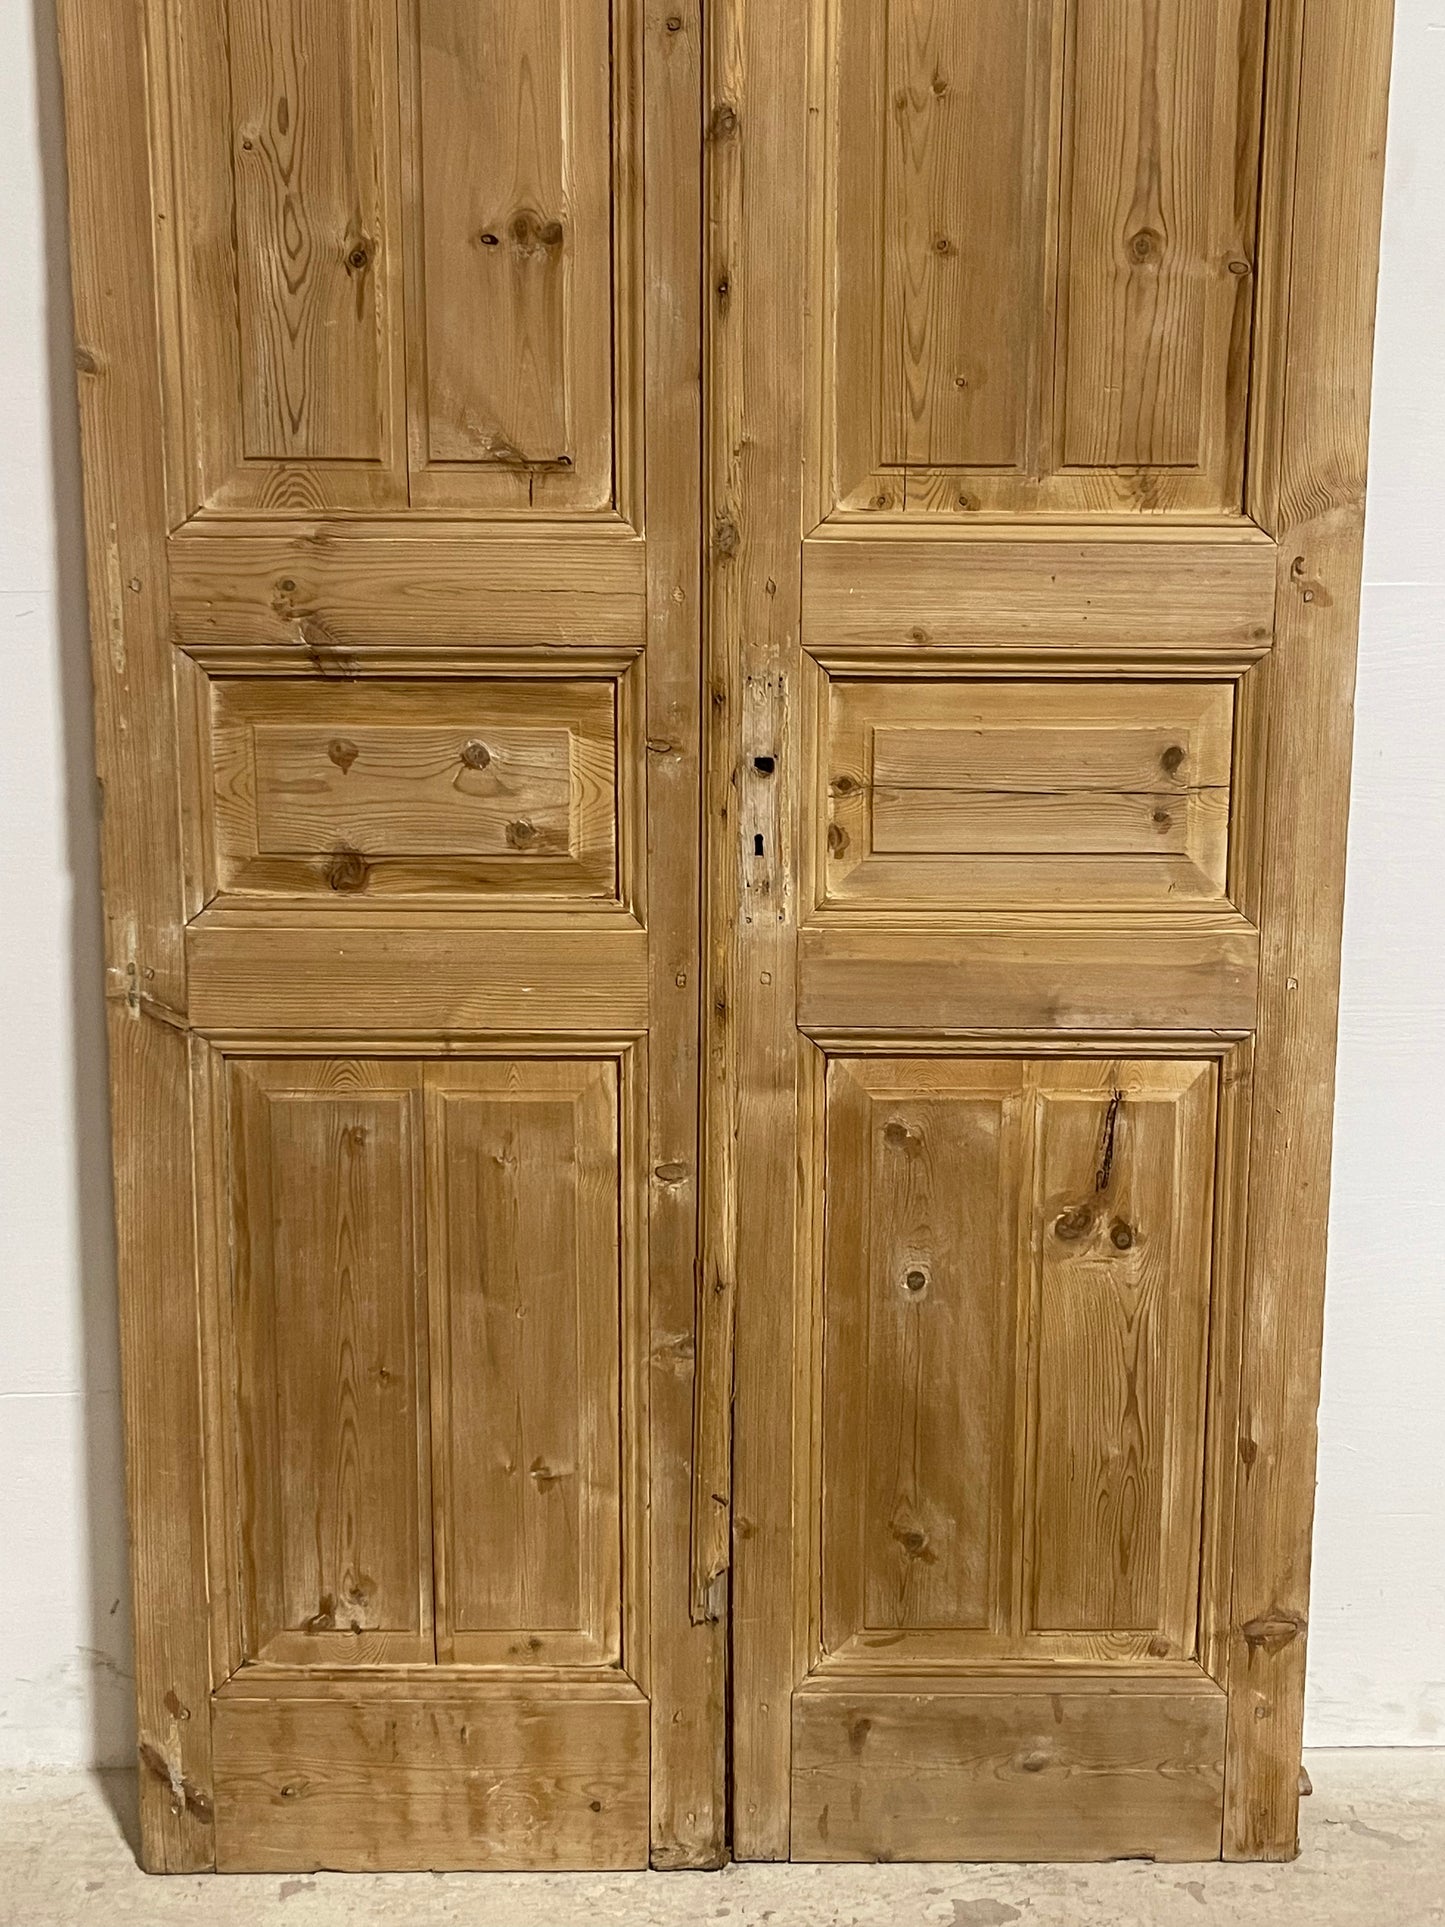 Antique French panel Doors (96.75x44.25) J606